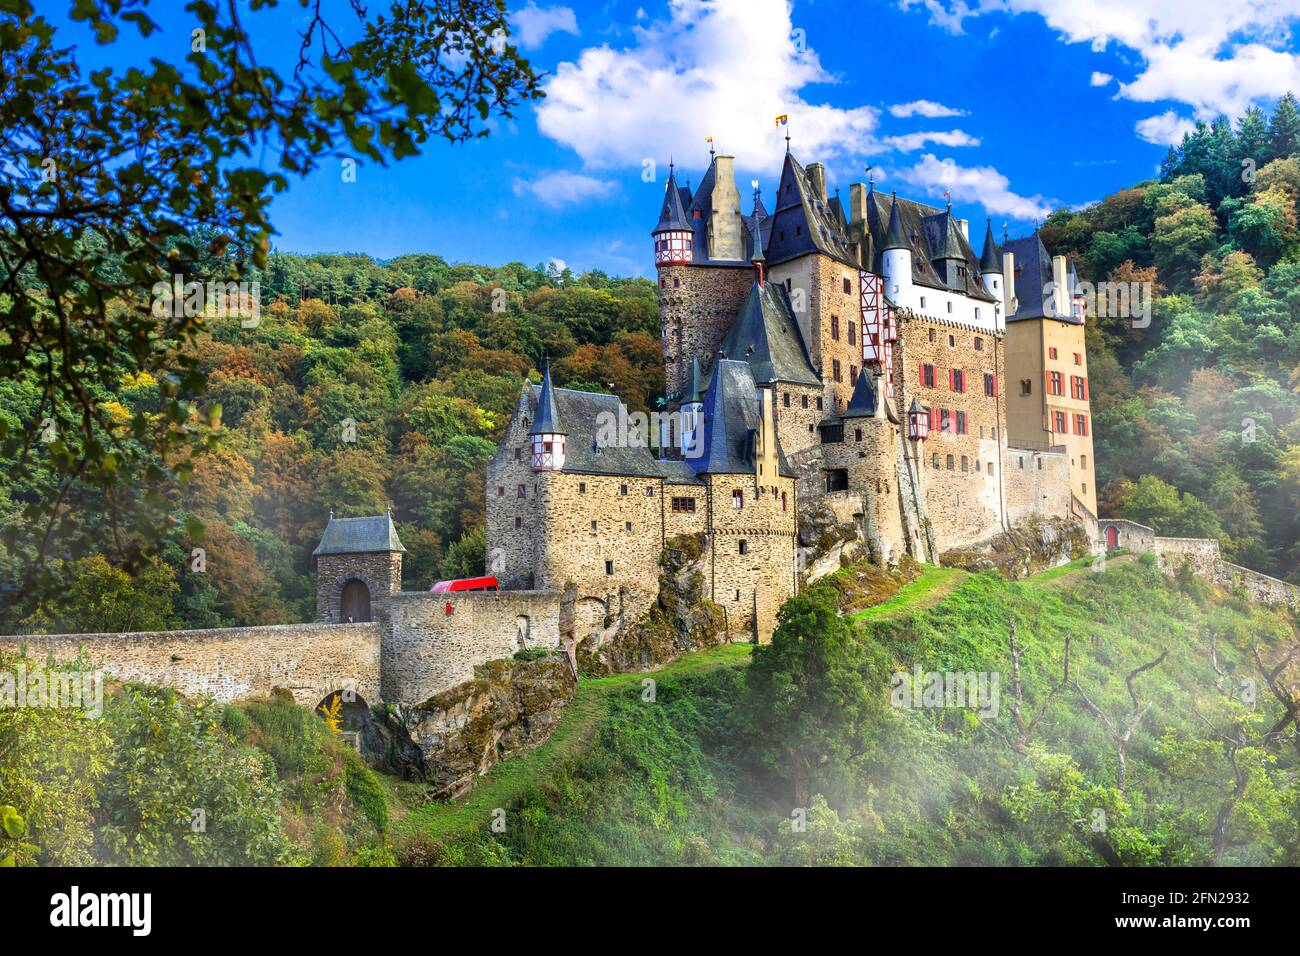 Burg Eltz - uno dei castelli più belli d'Europa. Viaggi in Germania e monumenti storici Foto Stock